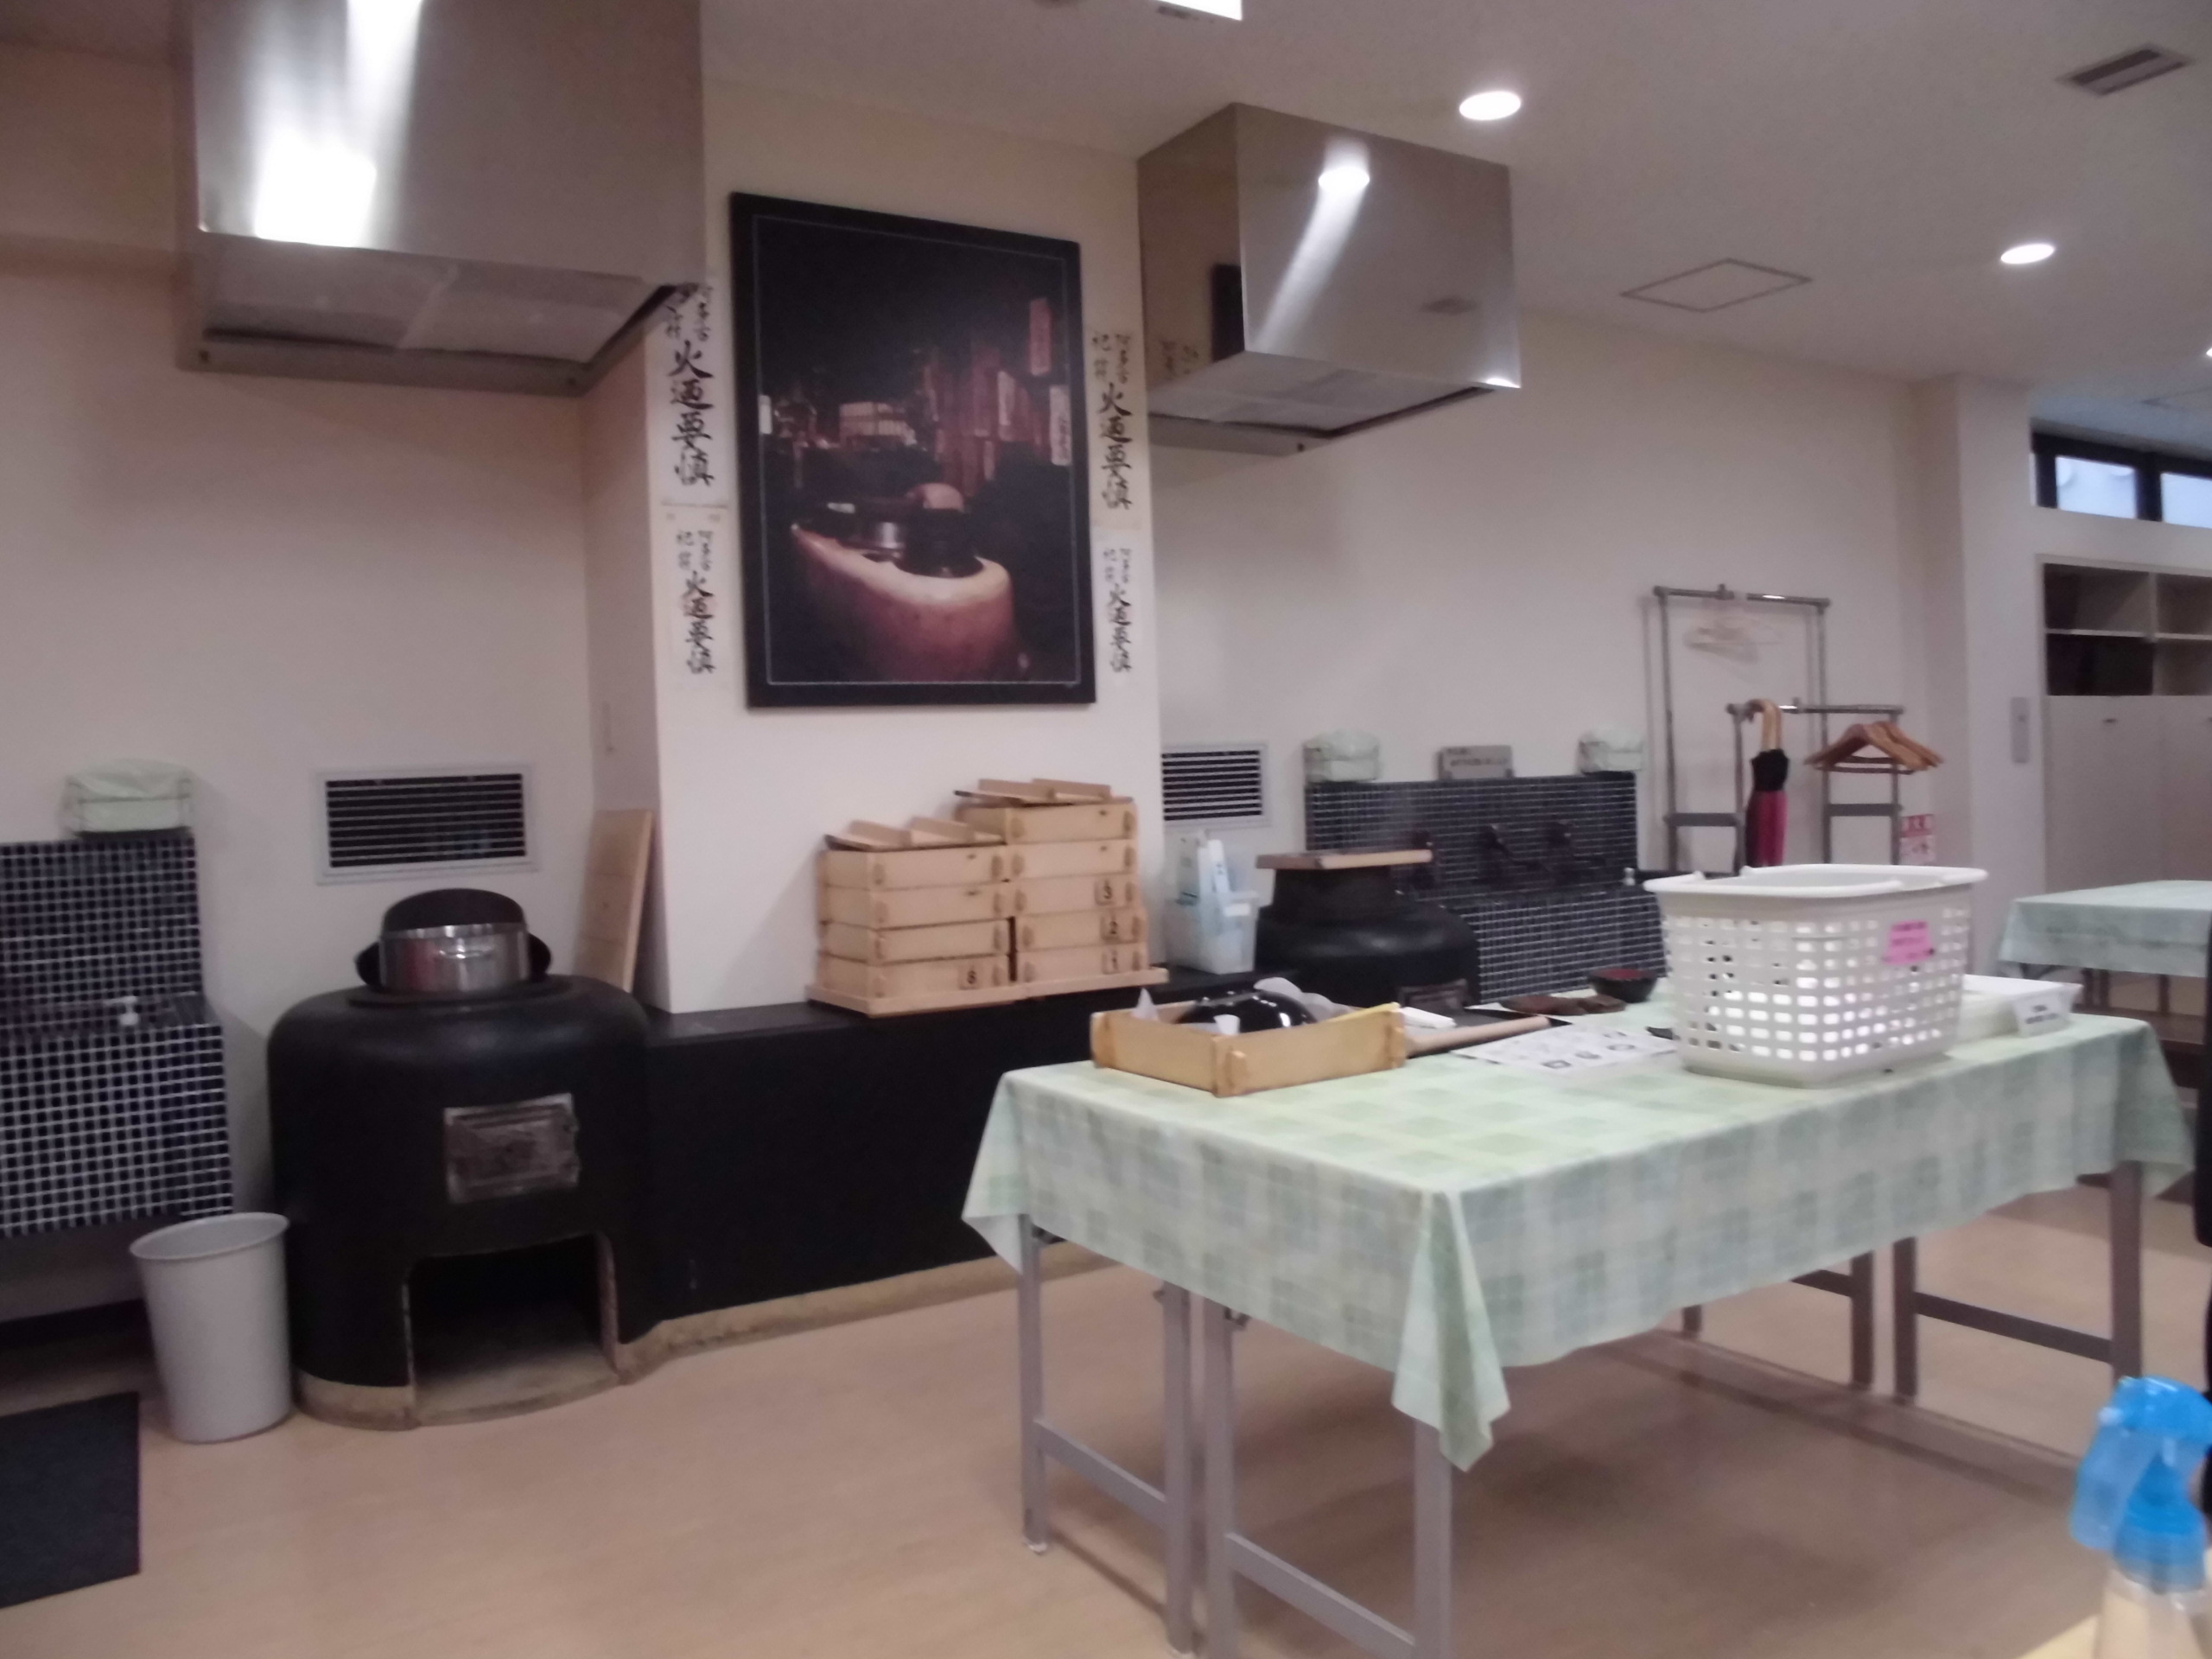 京都の銘菓 おたべ の作り方を学んでみよう おたべ体験道場 本館 に行ってきました By Vegetapsy Vegetapsyの今日はどこに行こうかな